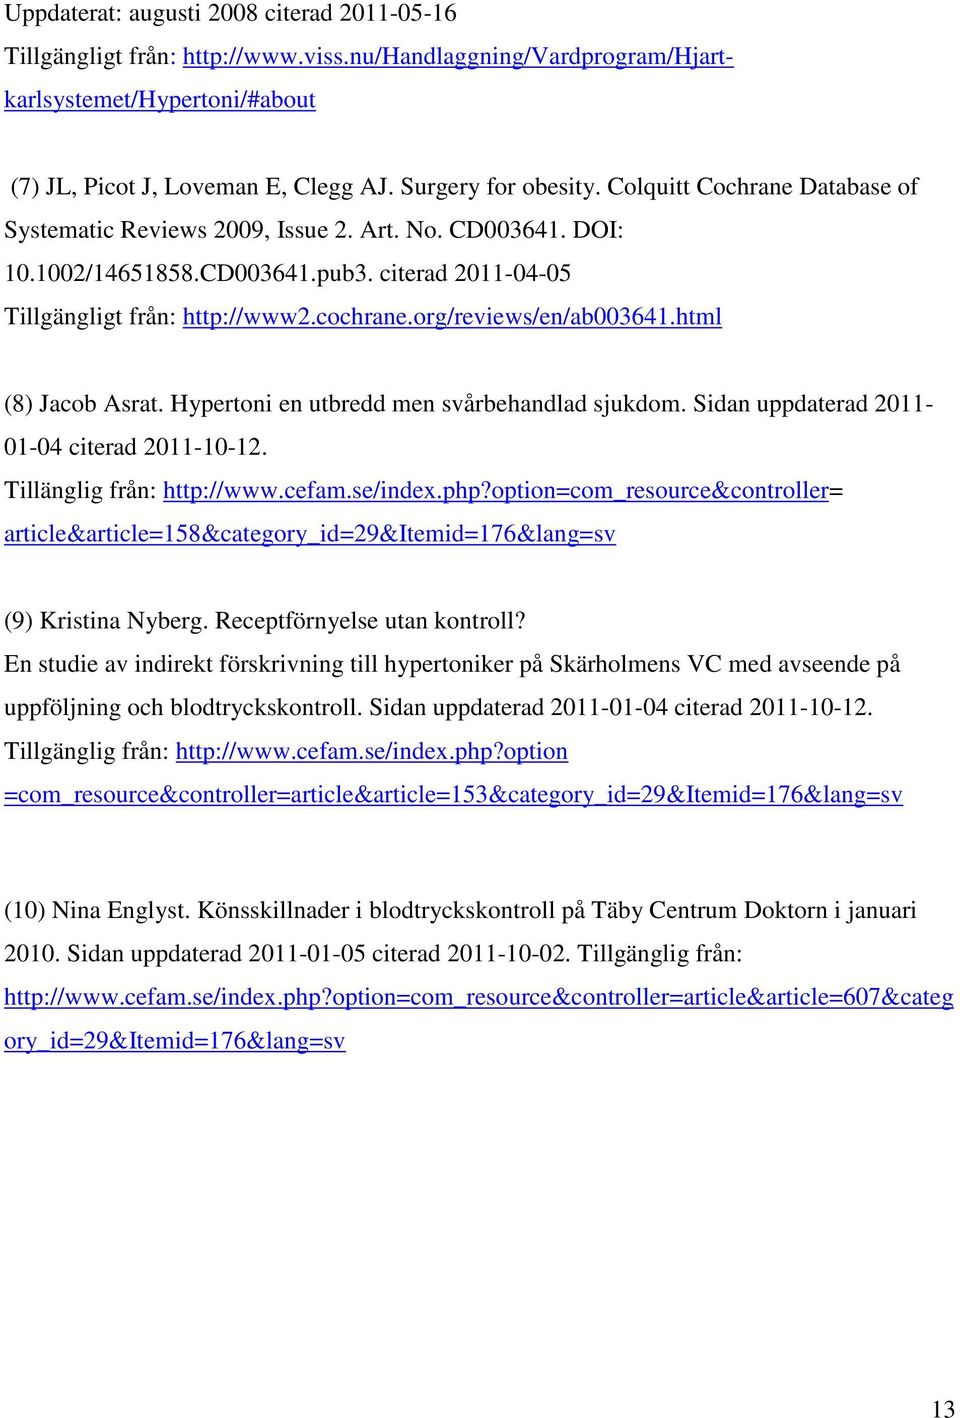 org/reviews/en/ab003641.html (8) Jacob Asrat. Hypertoni en utbredd men svårbehandlad sjukdom. Sidan uppdaterad 2011-01-04 citerad 2011-10-12. Tillänglig från: http://www.cefam.se/index.php?